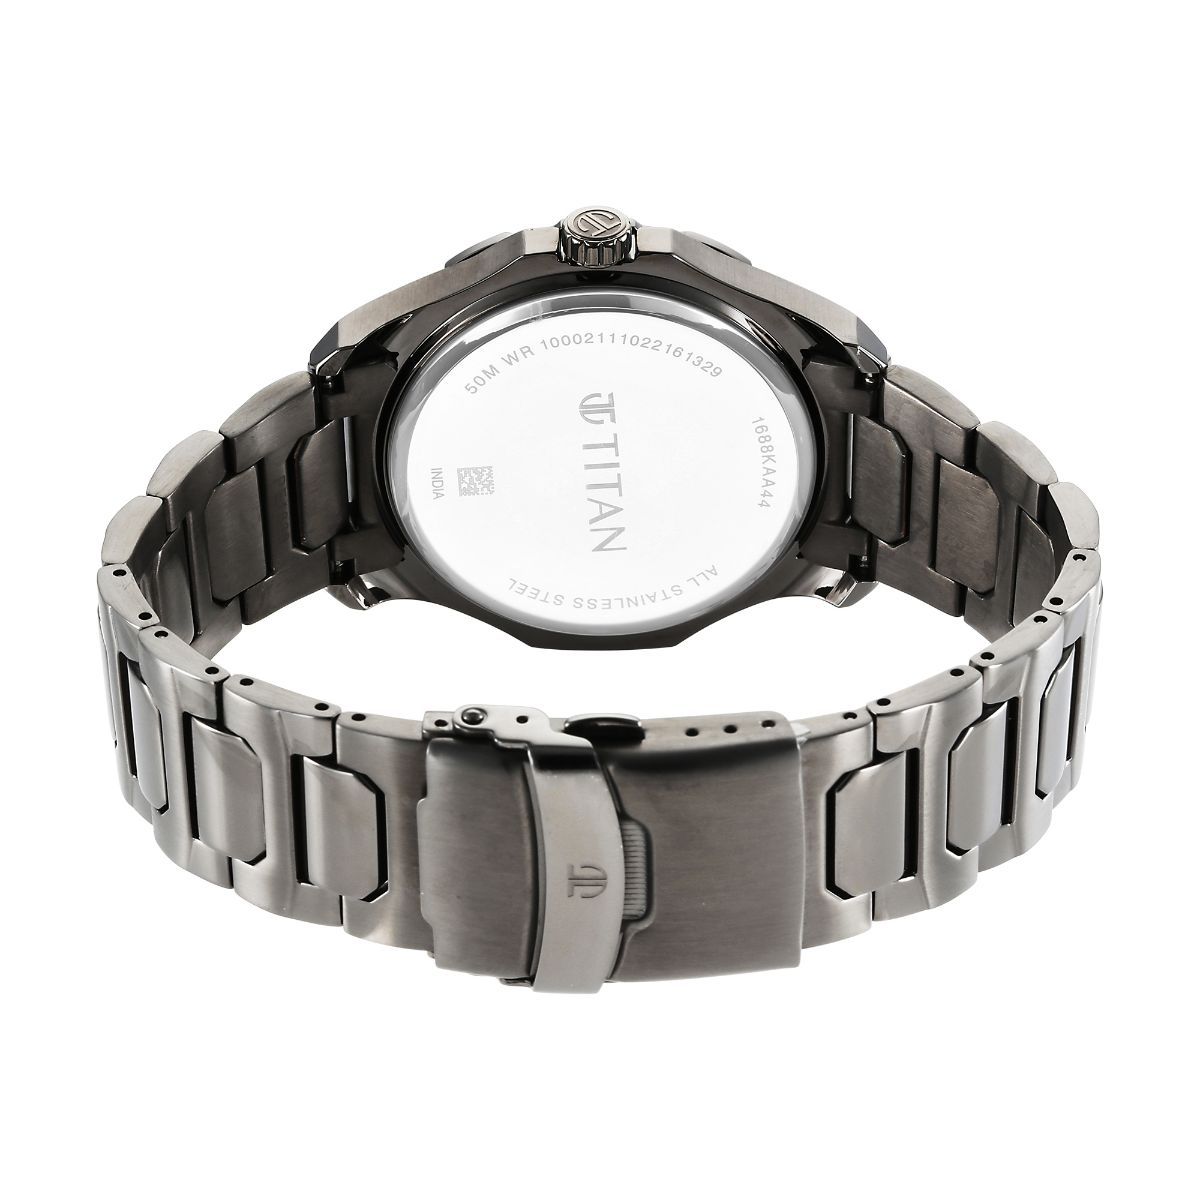 Titan Regalia Opulent IV Round Shape Men Watch - 1875YM01 Helios Watch  Store.